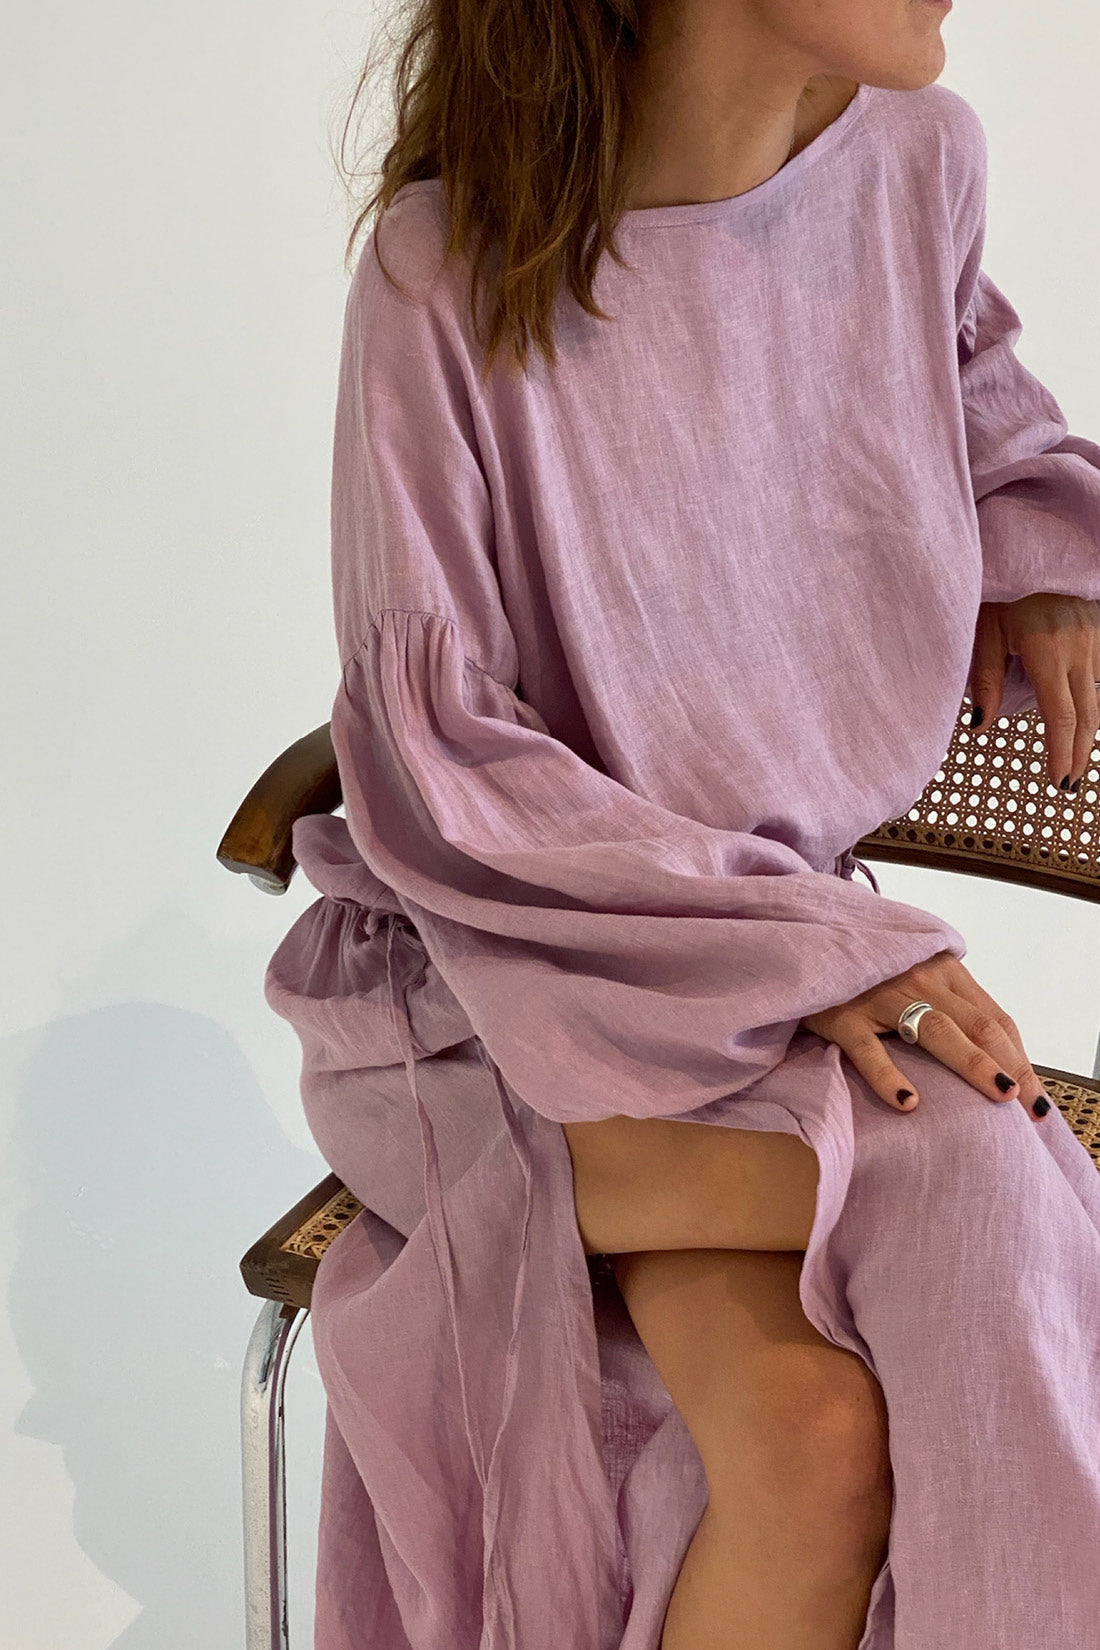 Kaspara Billowed Sleeve Maxi Dress Lilac